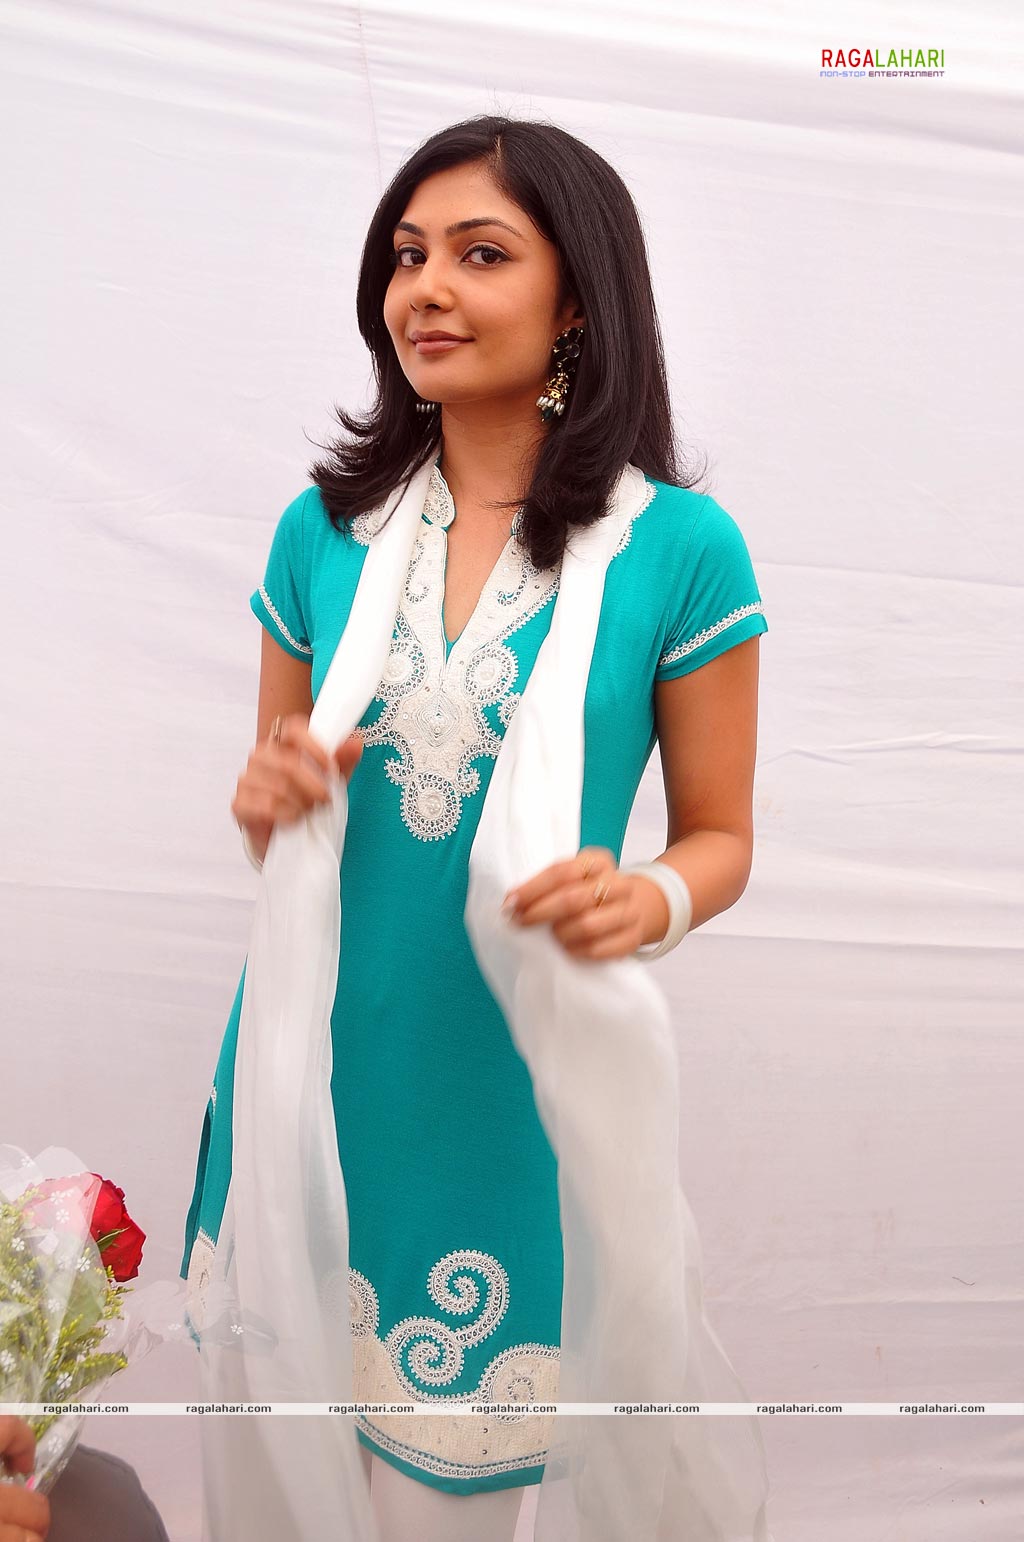 Kamalinee Mukherji